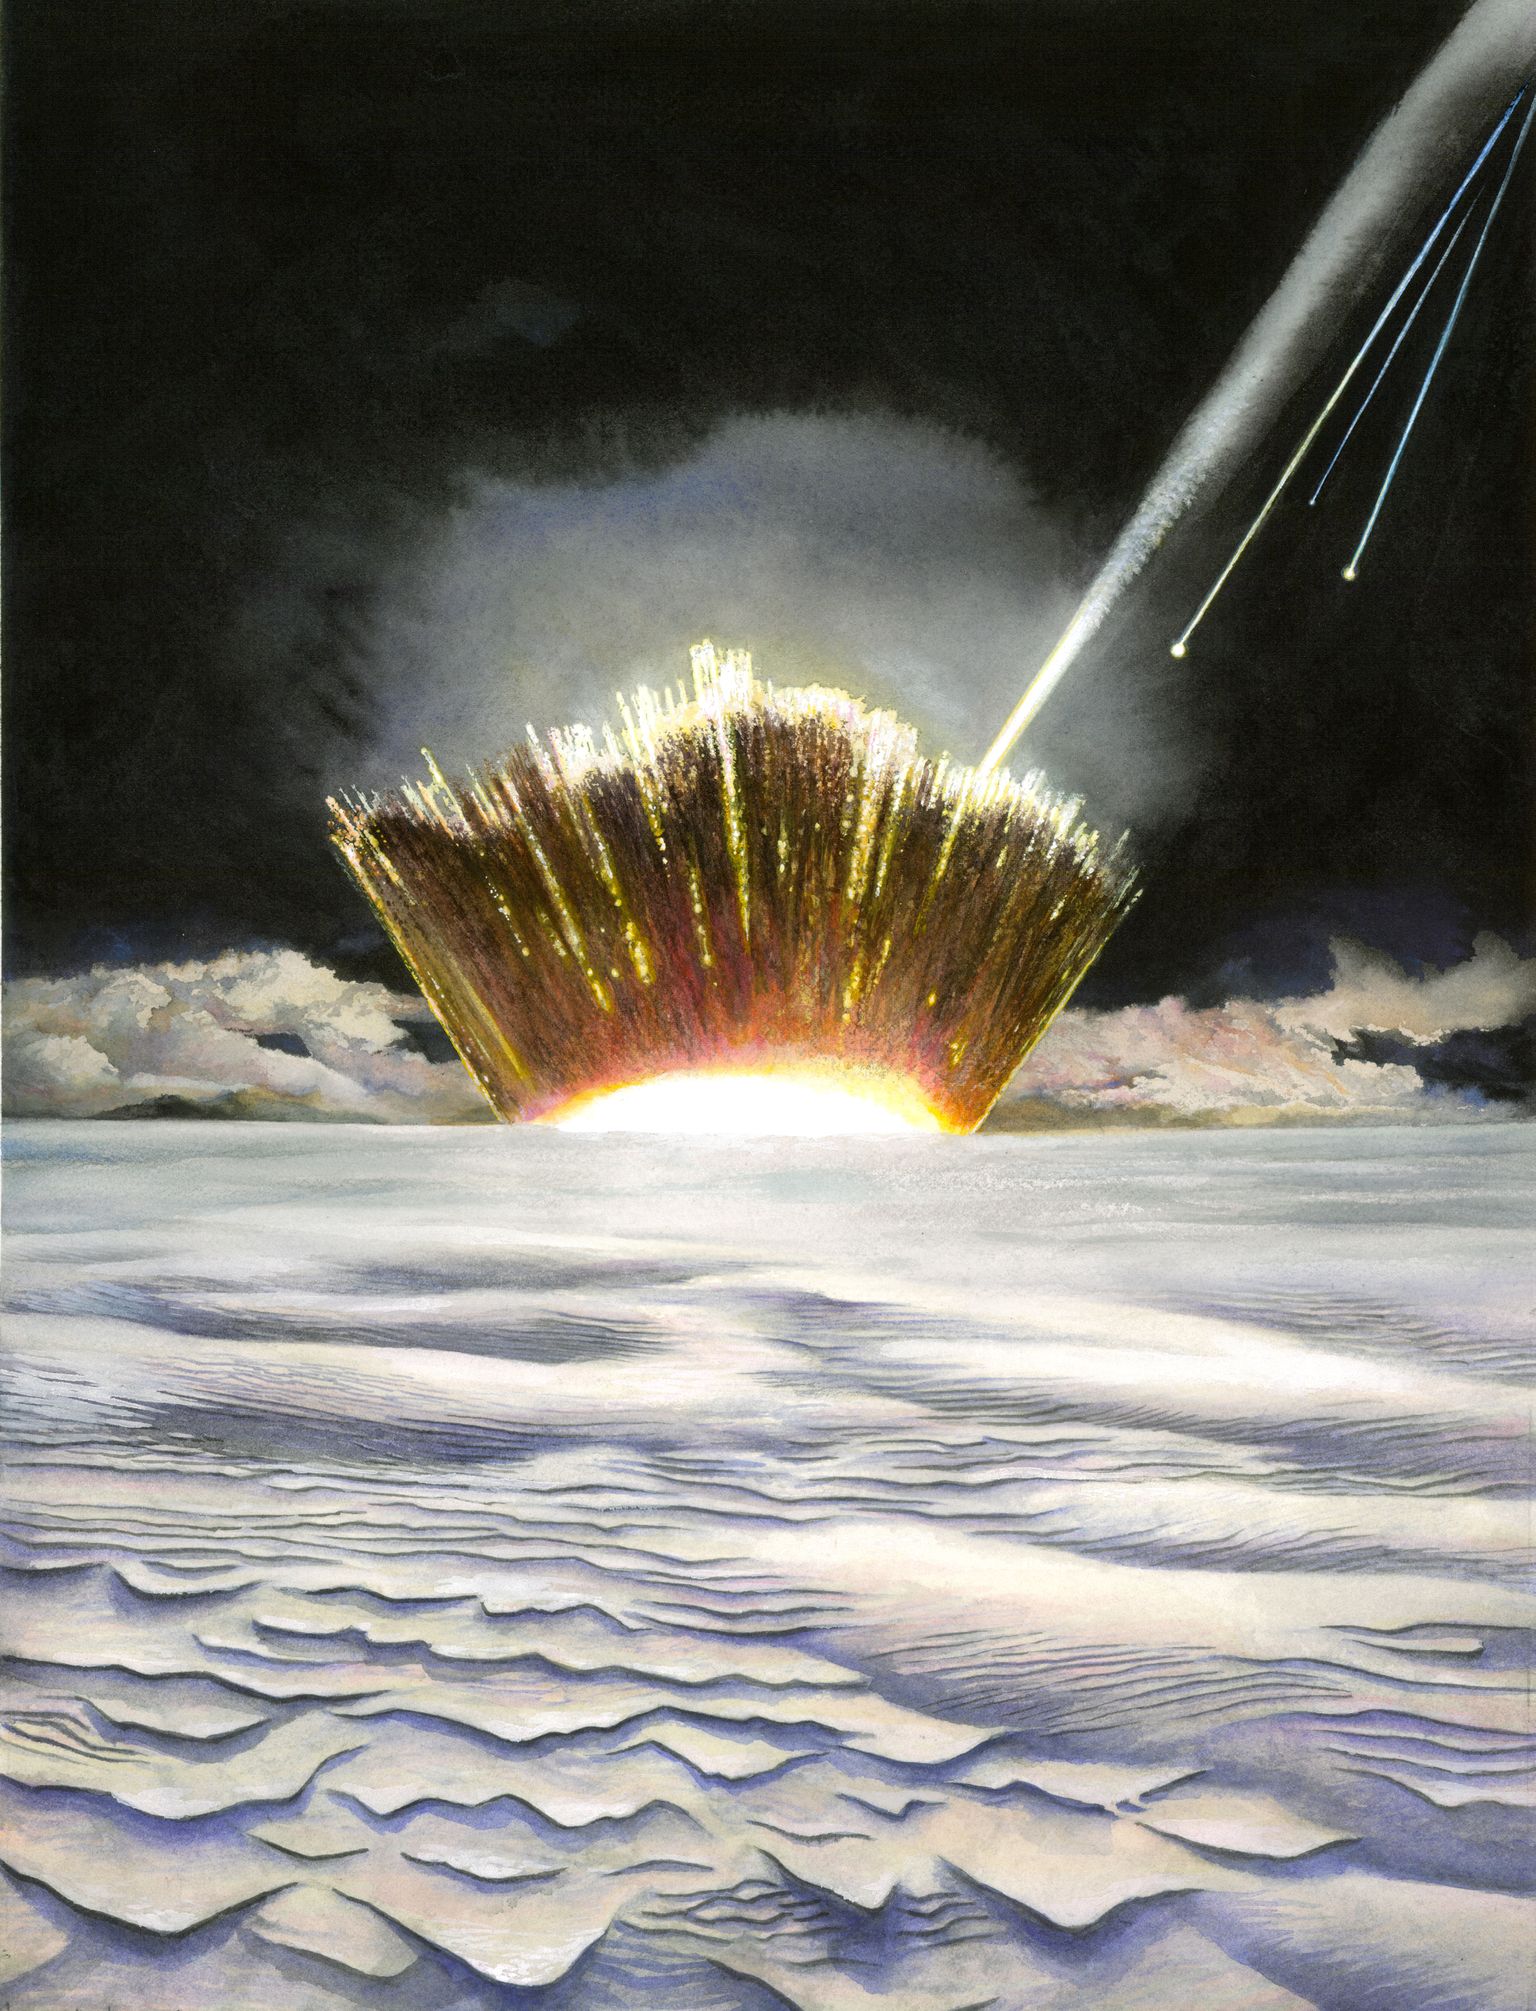 Kunstniku kujutis meteoriidi maale langemisest.